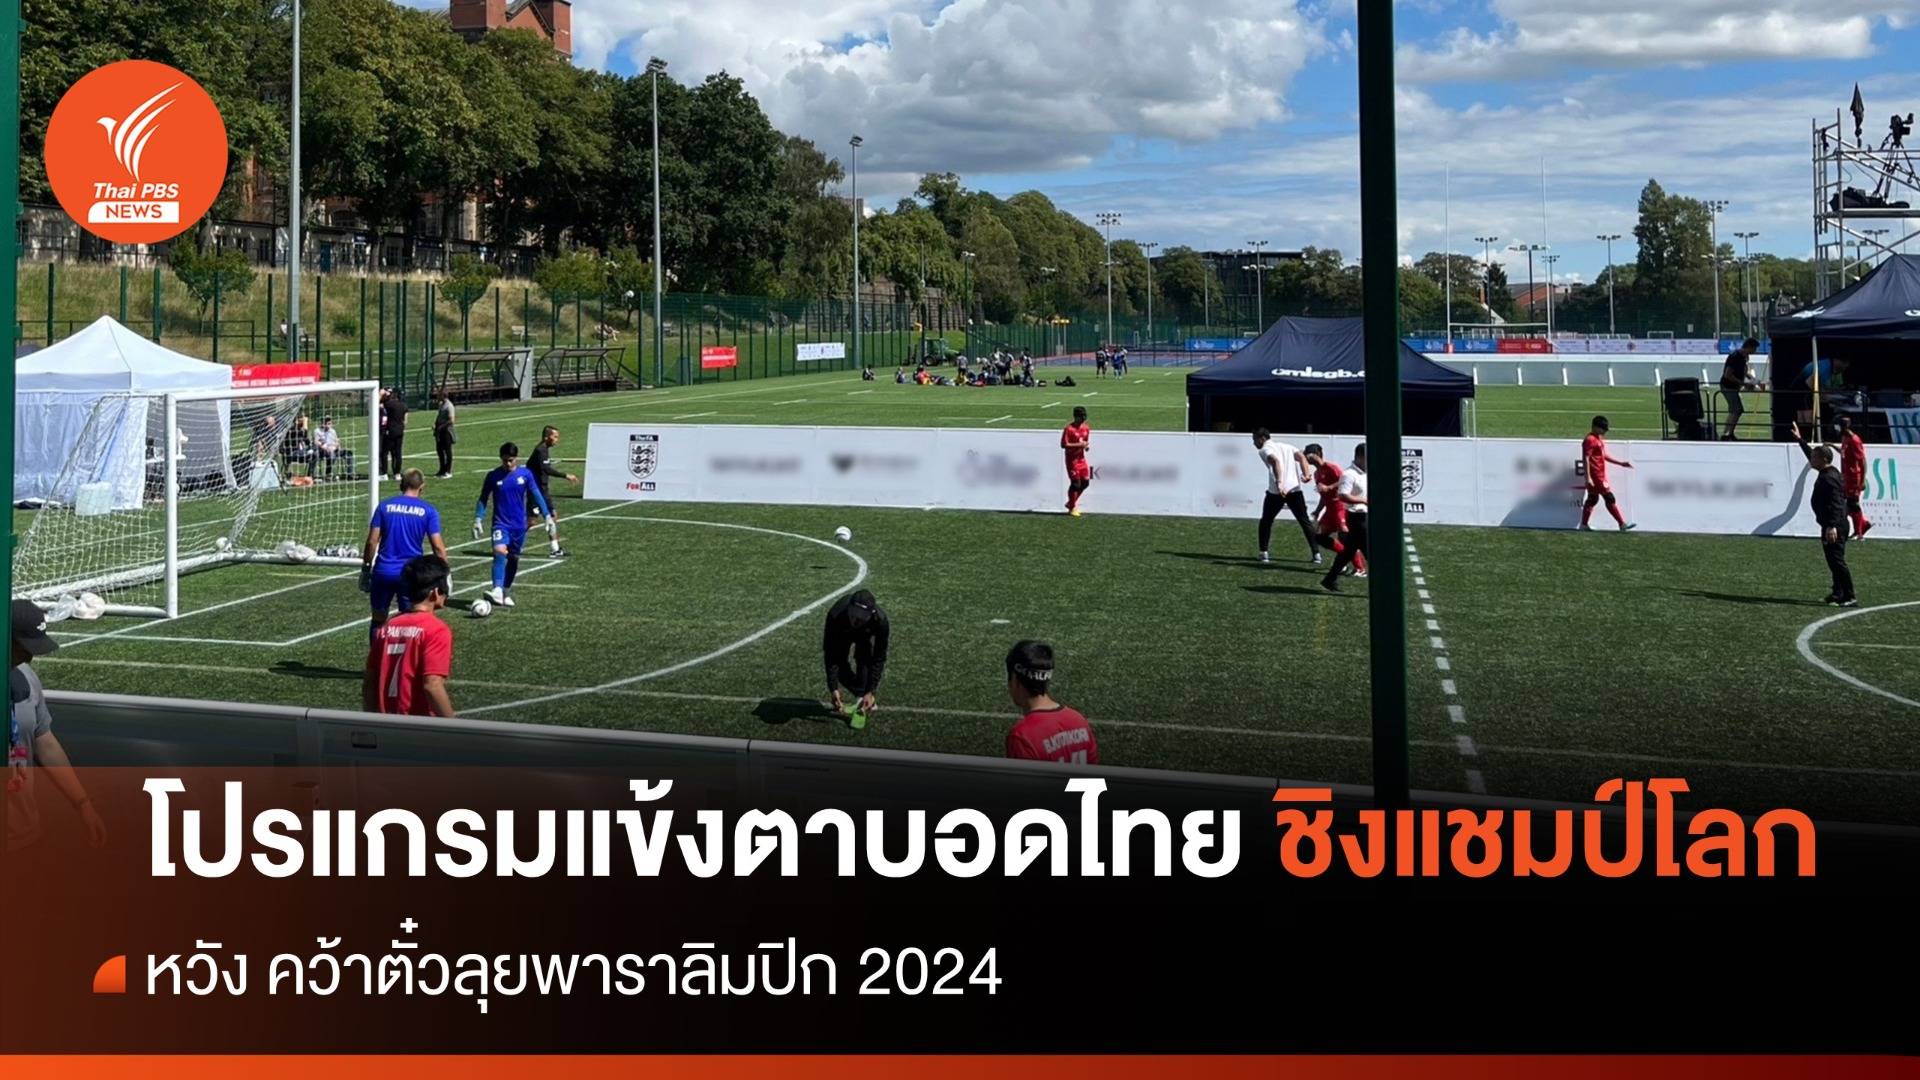 เปิดโปรแกรม ฟุตบอลตาบอดทีมชาติไทย ลุยศึกชิงแชมป์โลก 2023